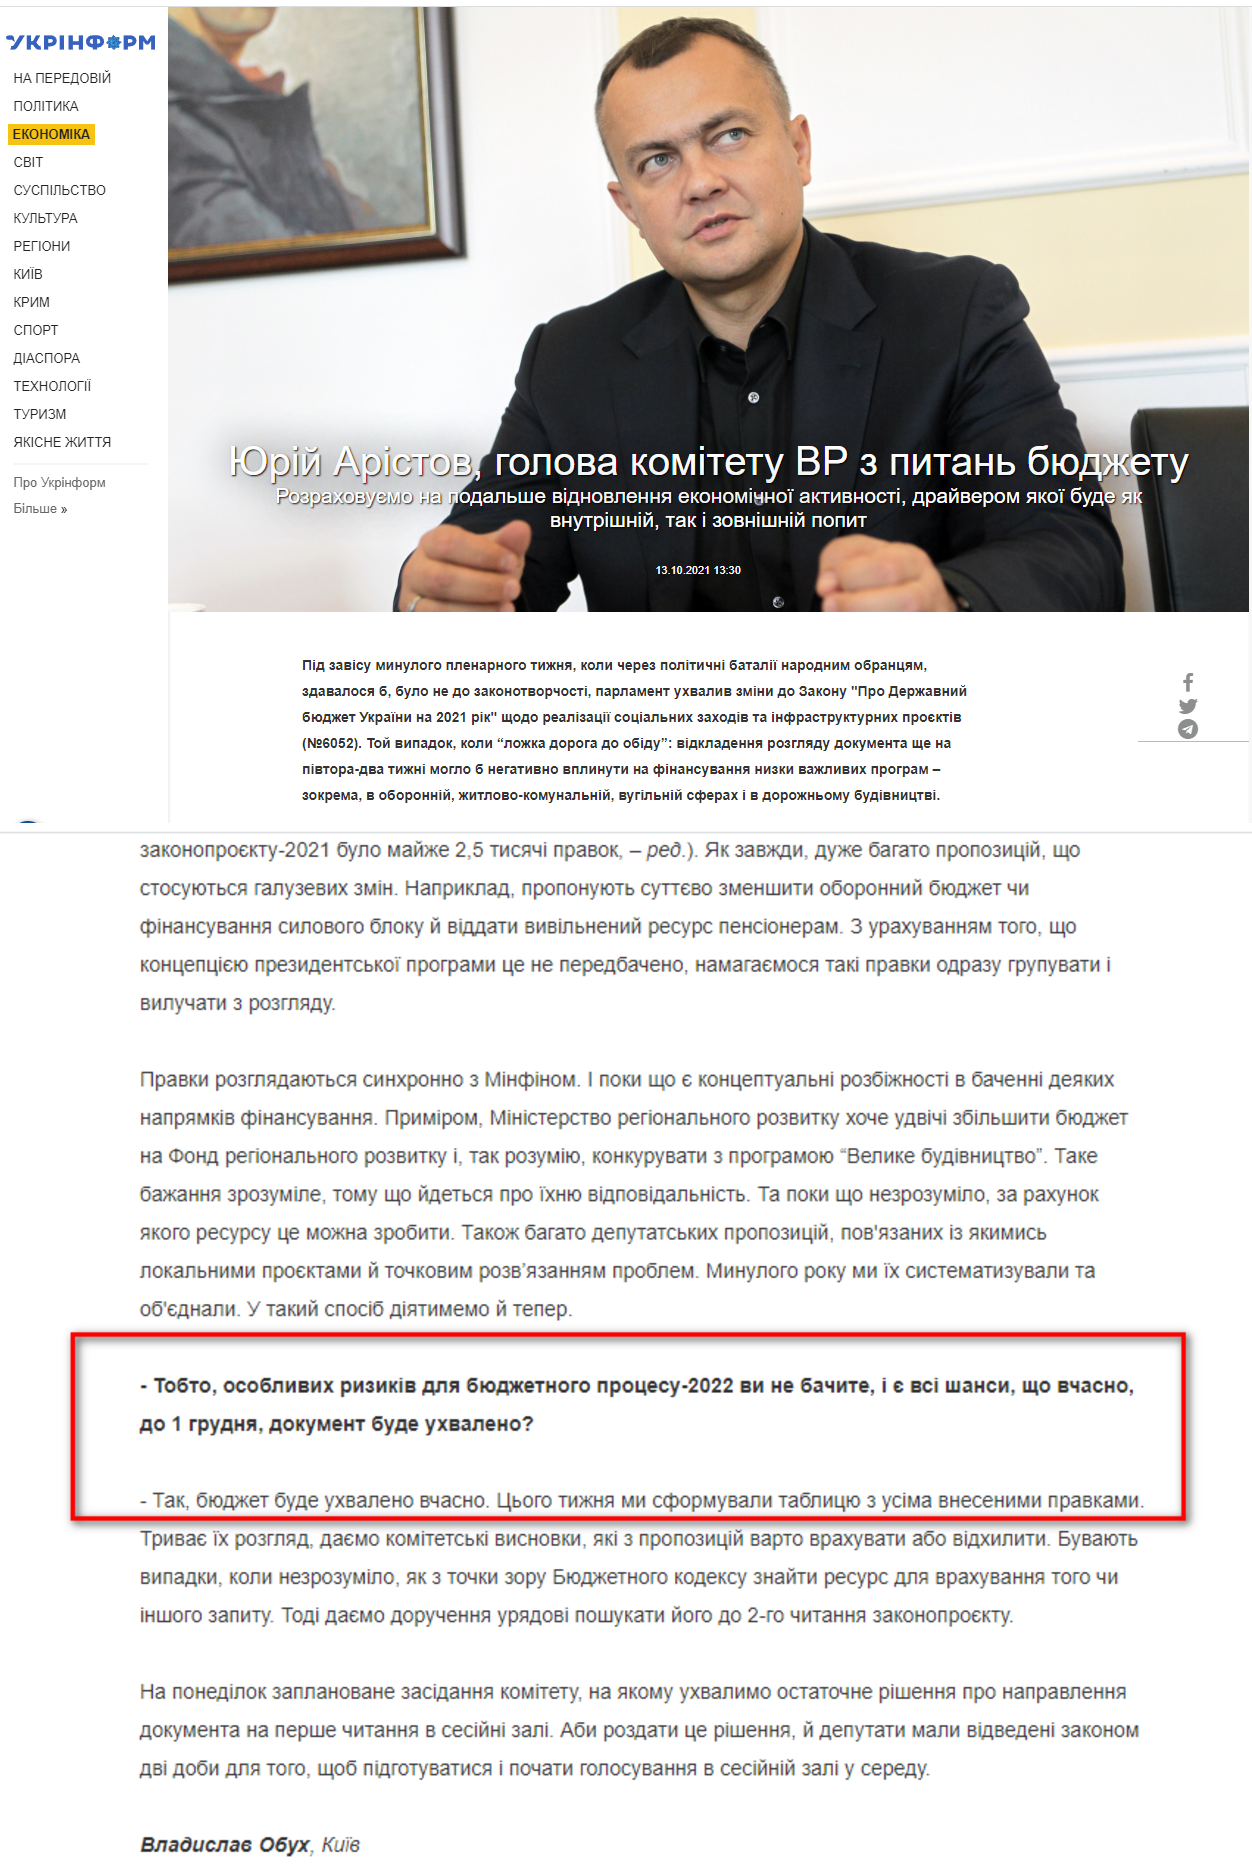 https://www.ukrinform.ua/rubric-economy/3332303-urij-aristov-golova-komitetu-vr-z-pitan-budzetu.html